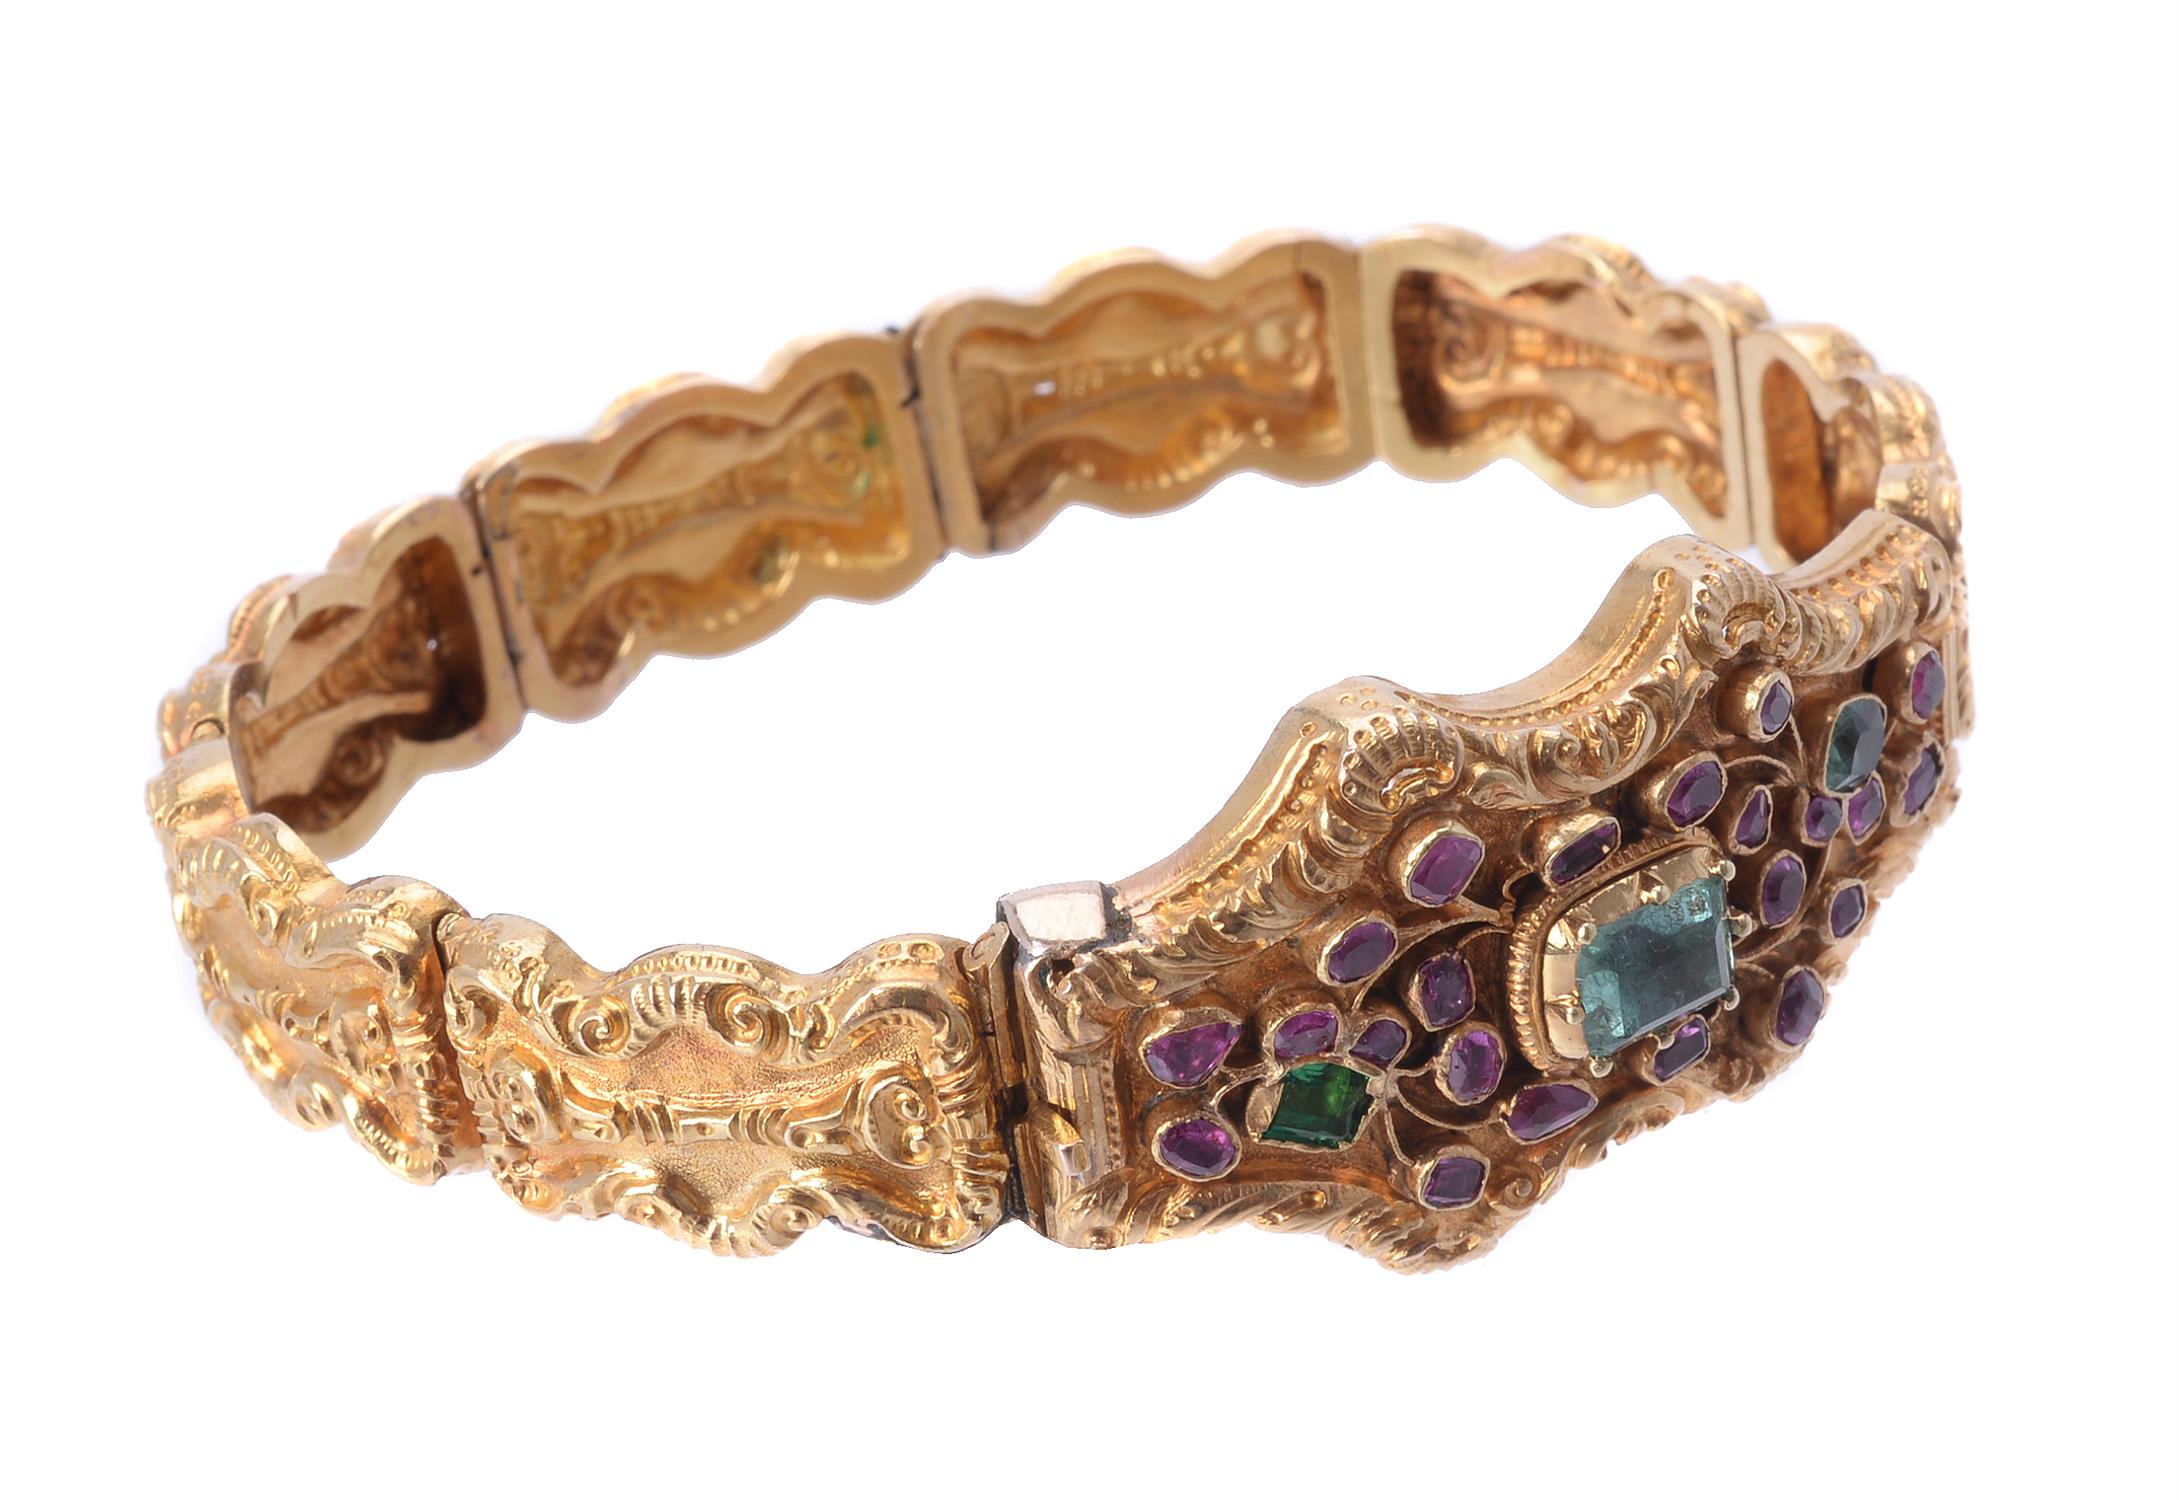 A Regency gold, ruby and emerald bracelet